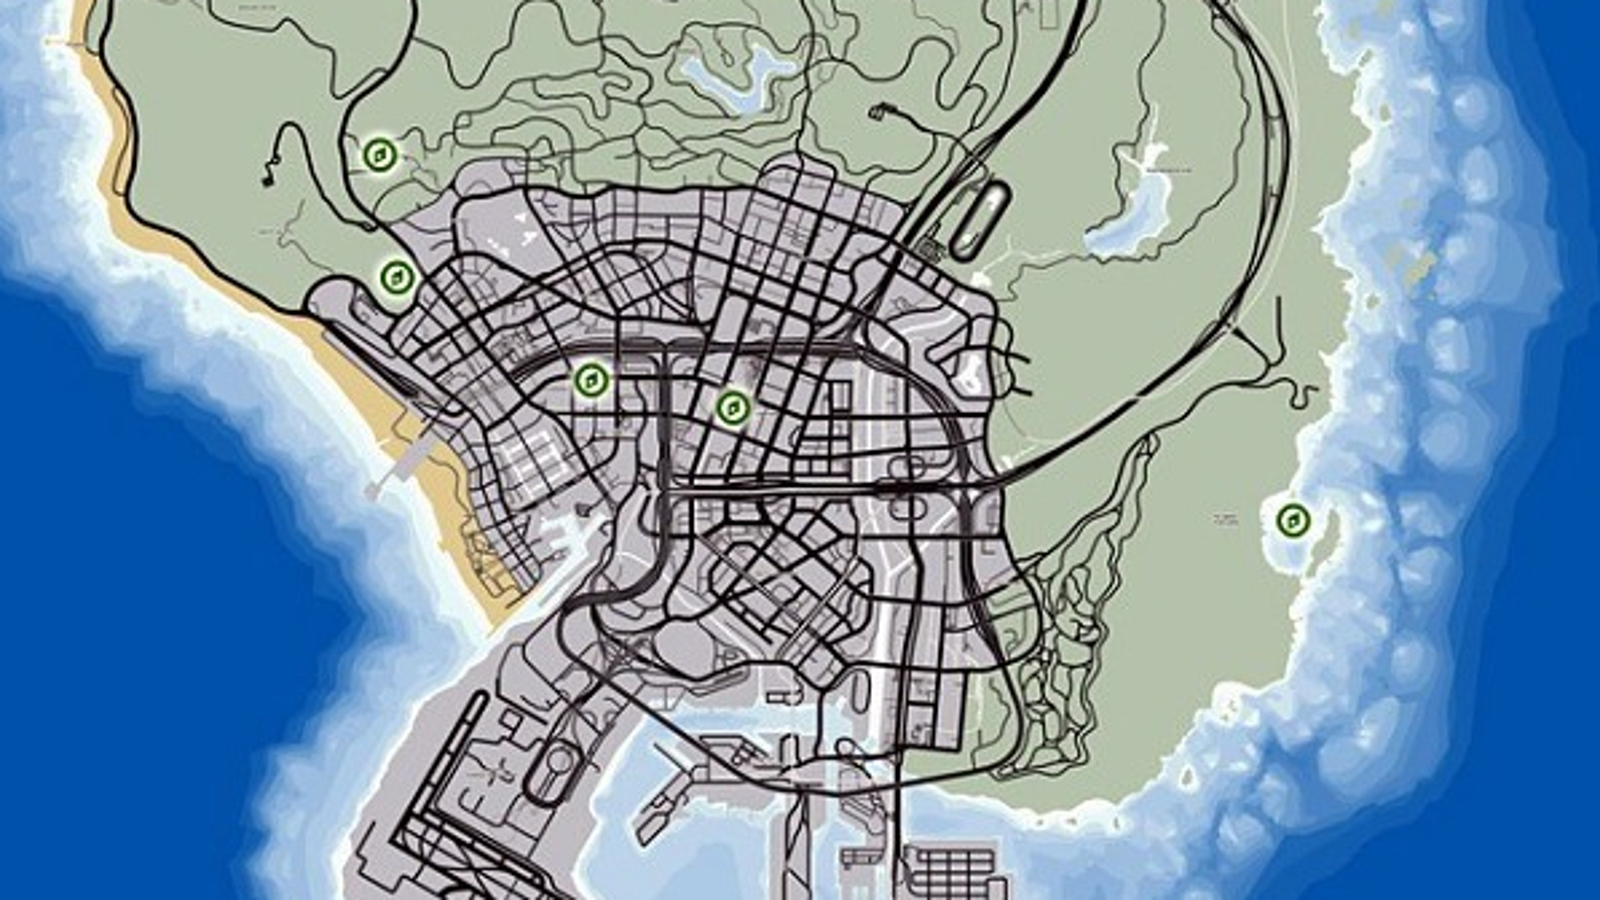 GTA V: CONFIRA O GOOGLE MAPS DO JOGO